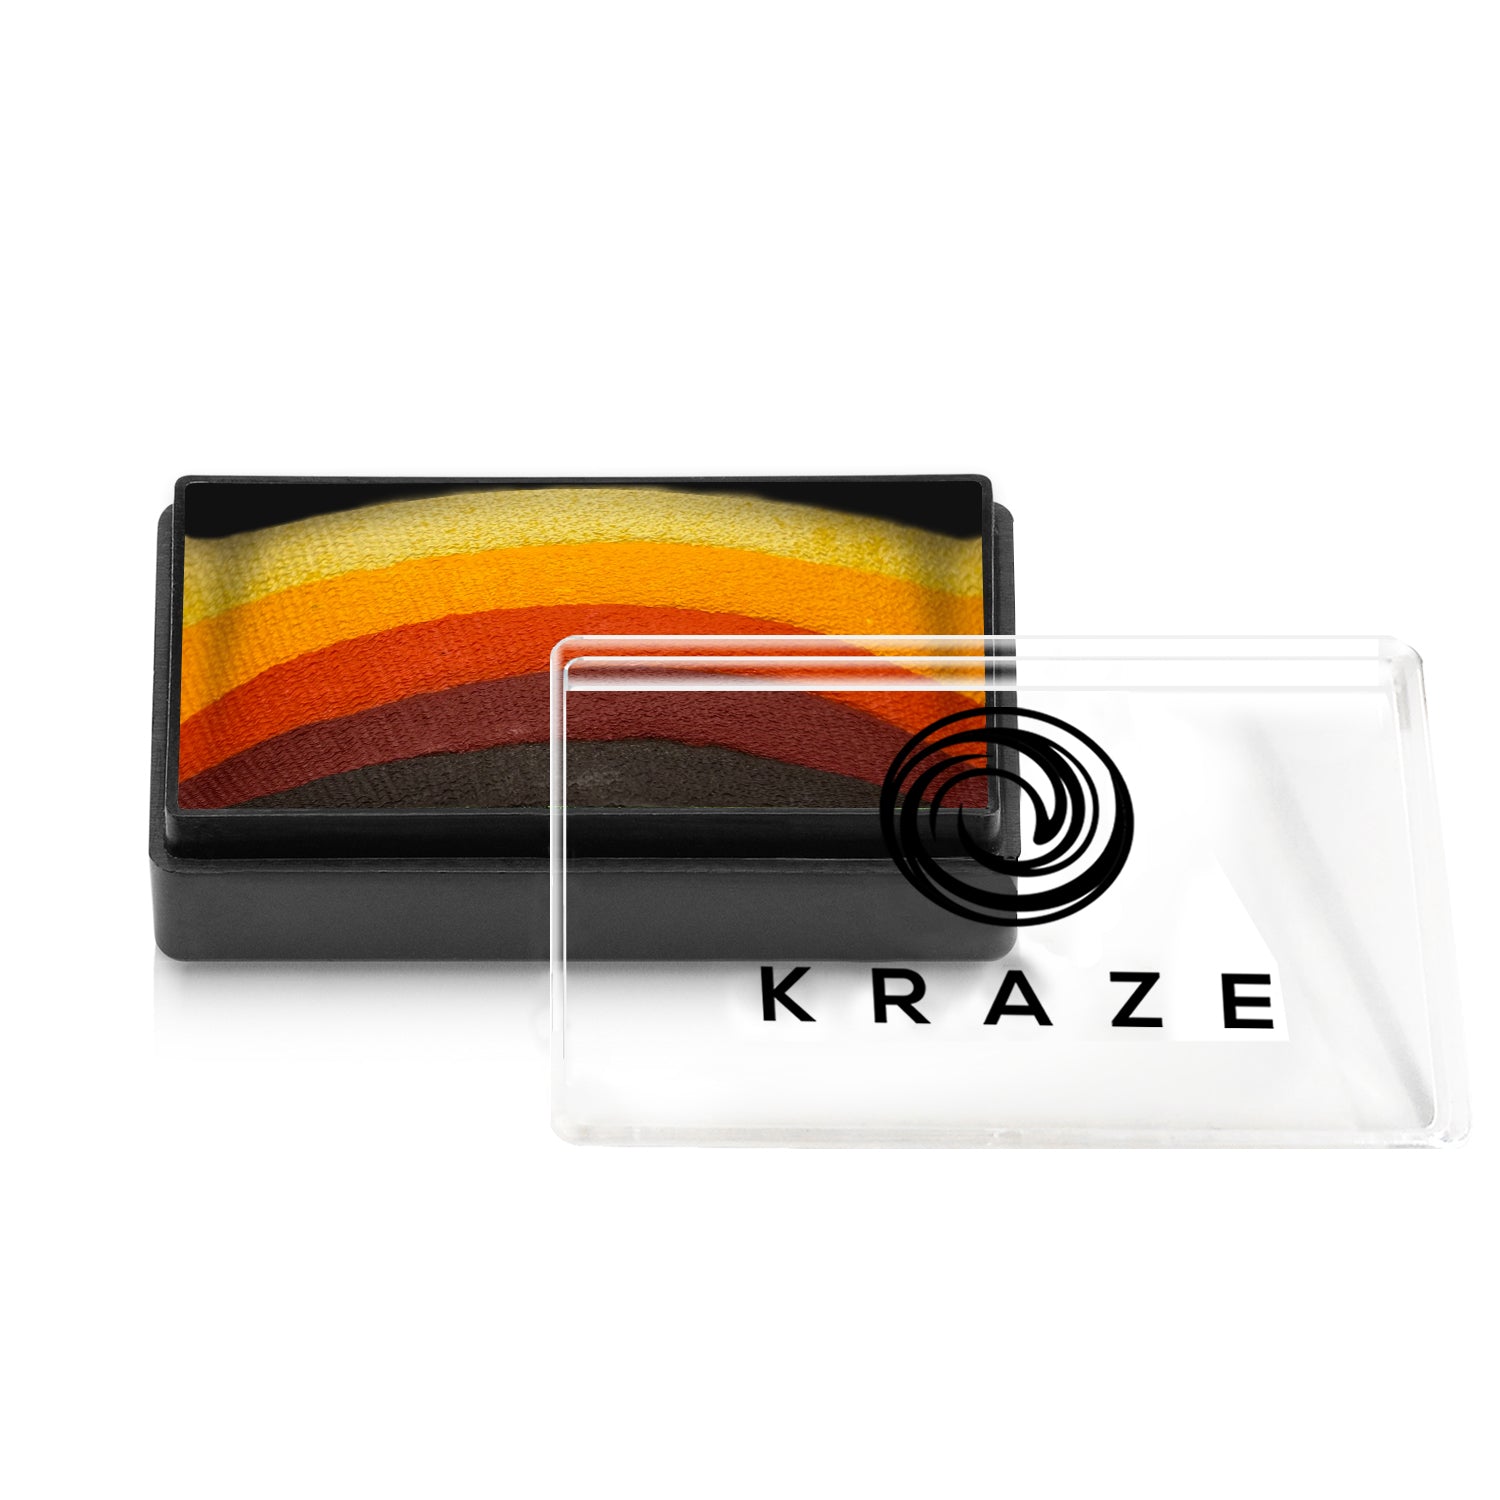 Kraze FX Dome Stroke by Linnea Novak - Autumn Leaf (25 gm)